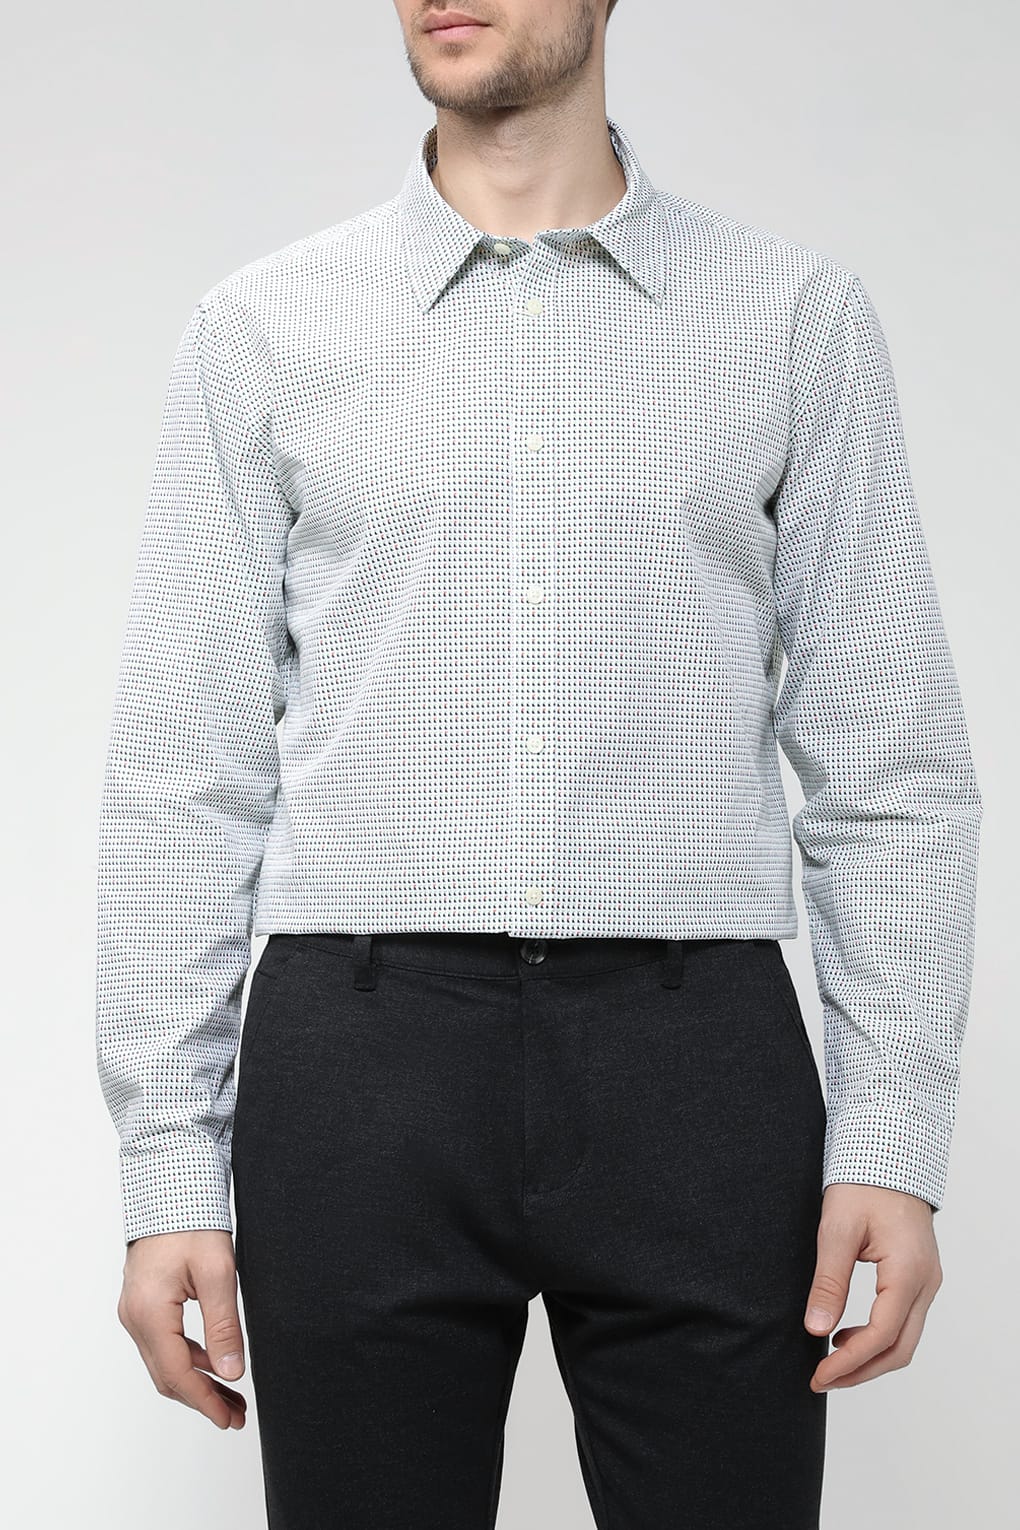 Рубашка мужская Esprit Casual 013EE2F303 белая 2XL